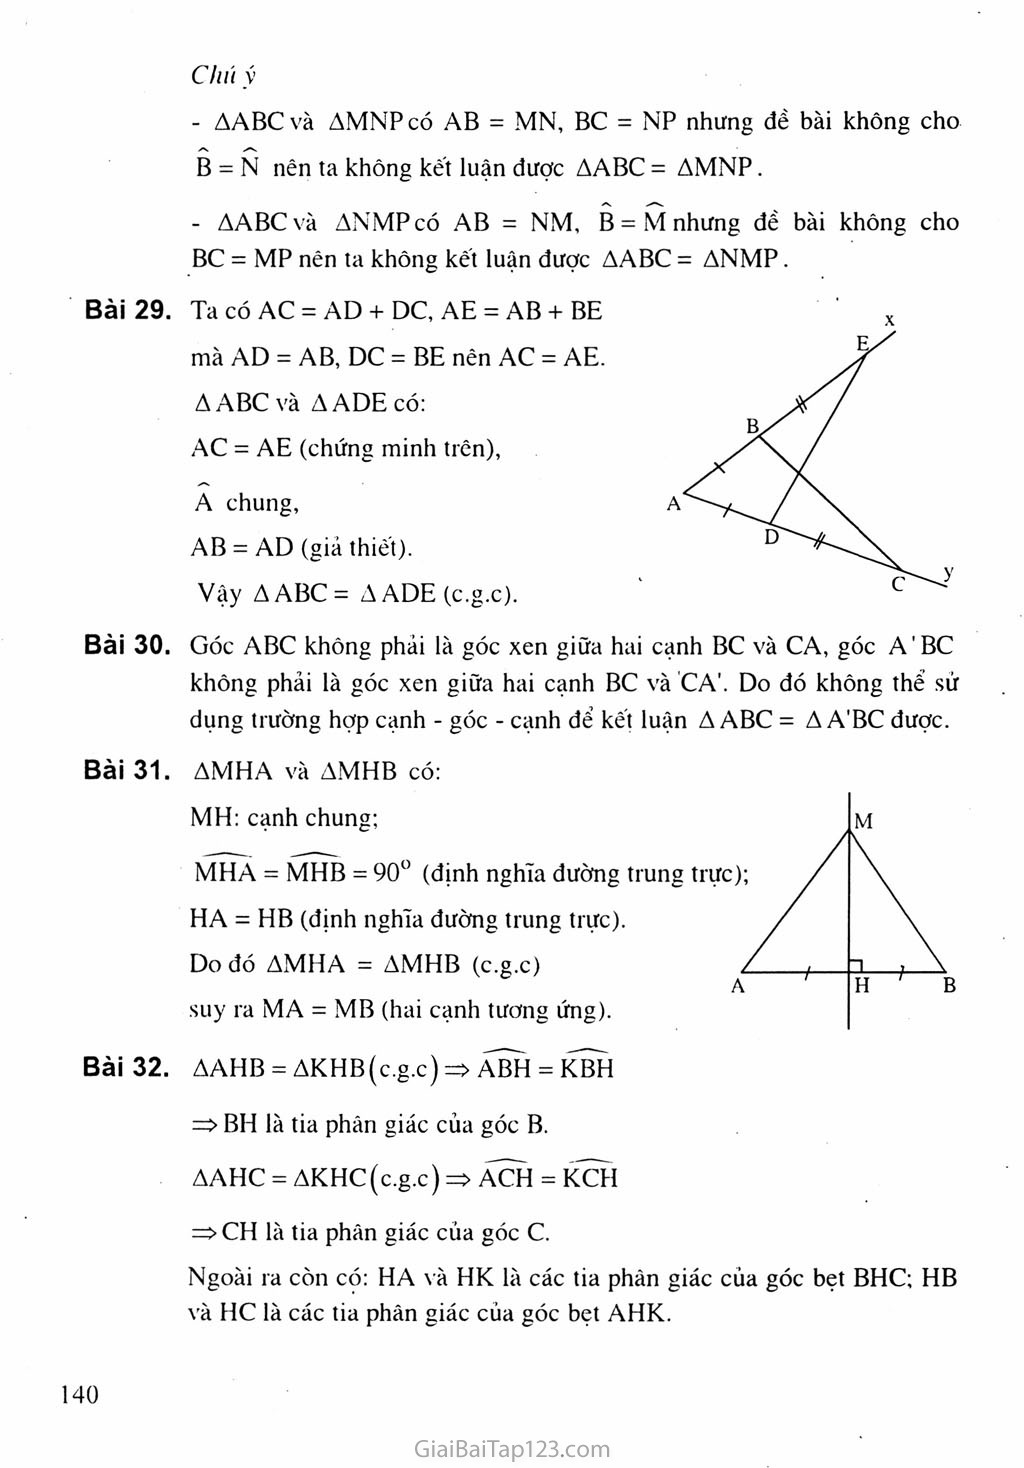 Bài 4. Trường hợp bằng nhau thứ hai của tam giác: cạnh - góc - cạnh (c.g.c) trang 4